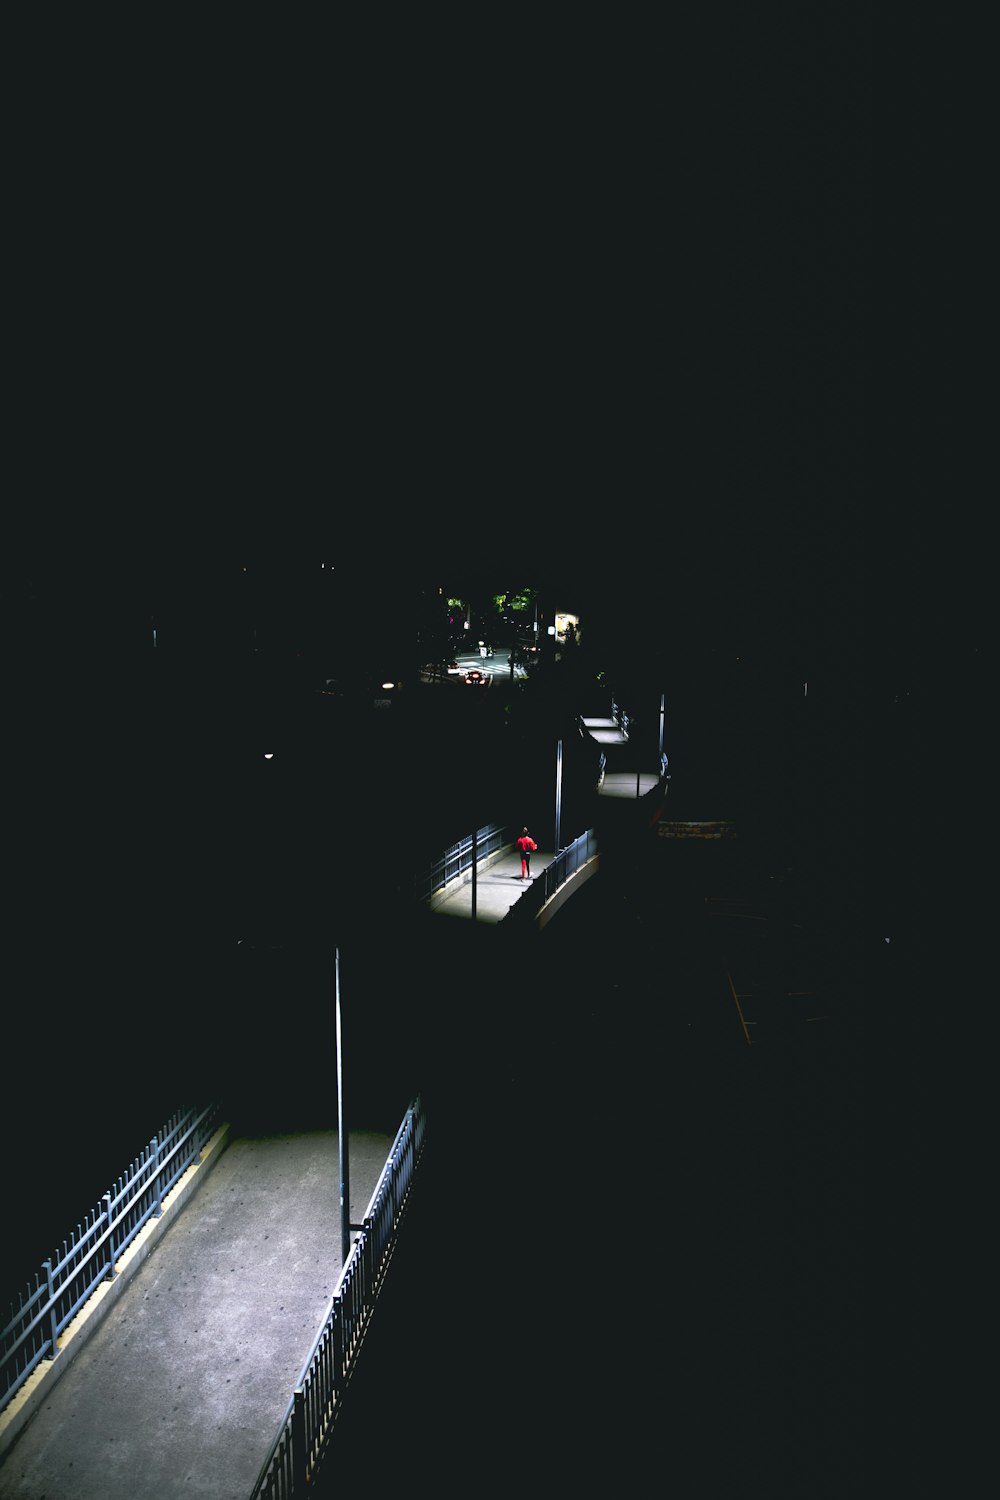 Un'immagine scura di una strada di notte